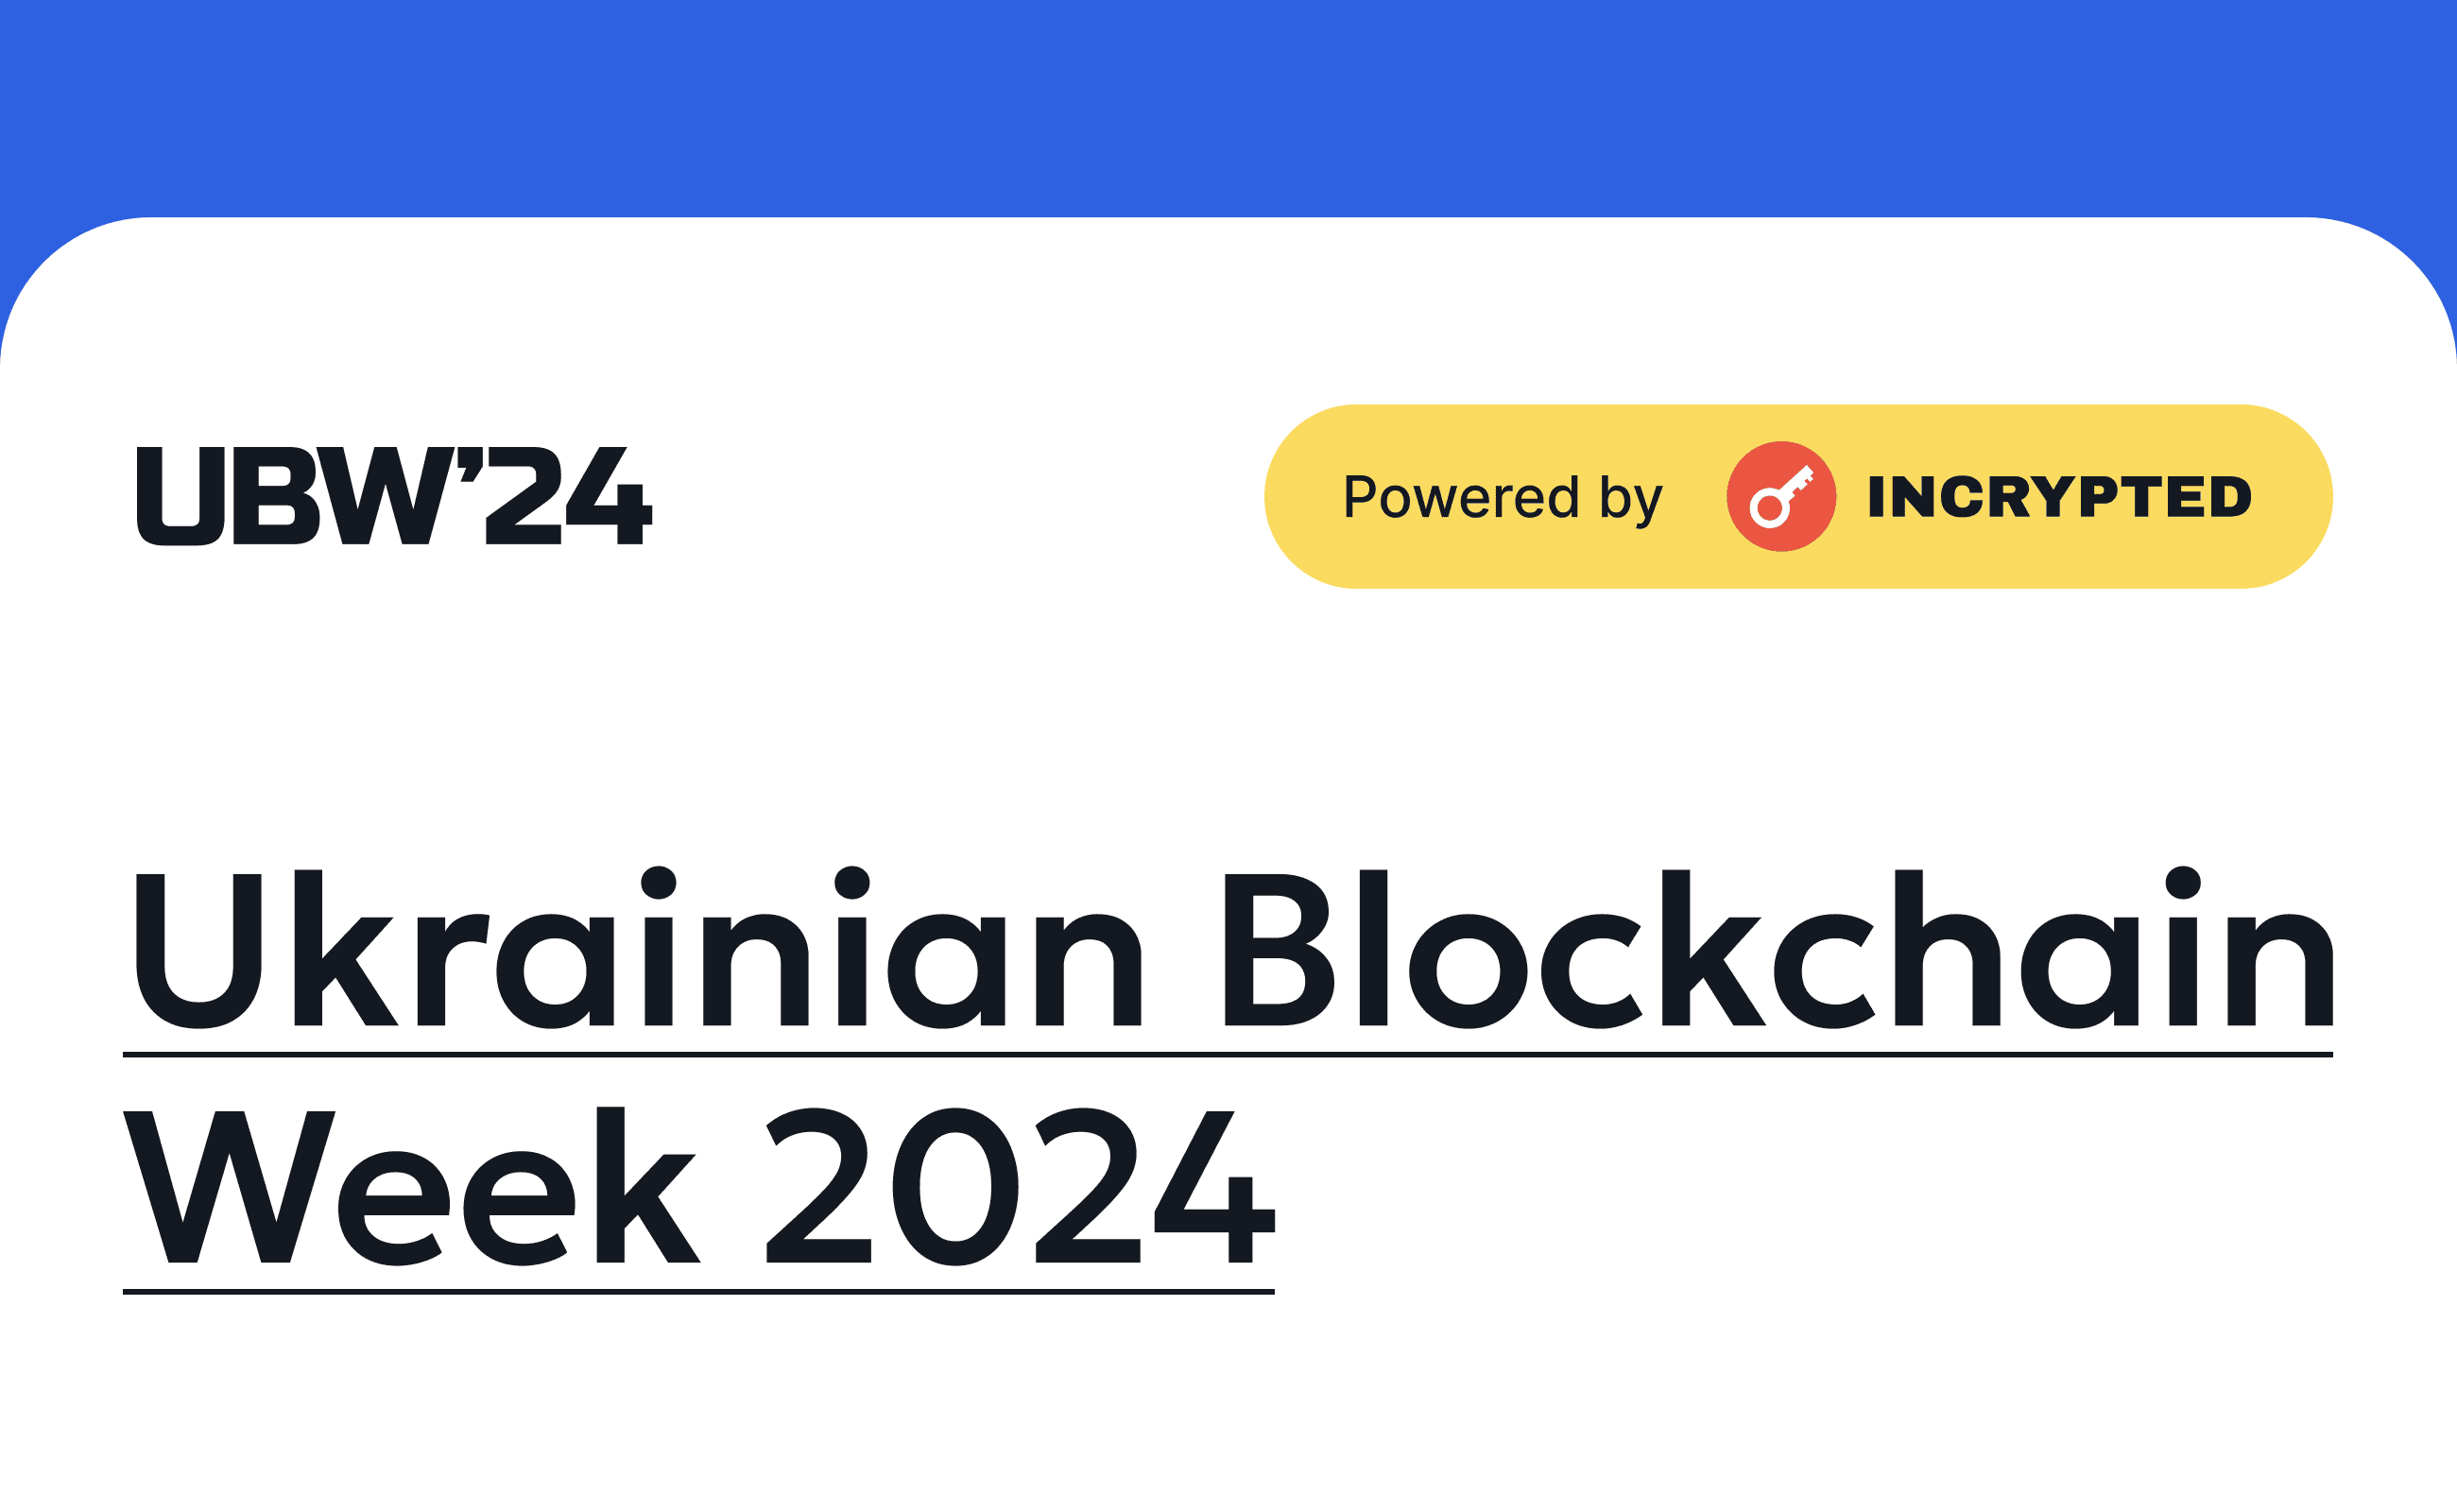 urk blockchain week